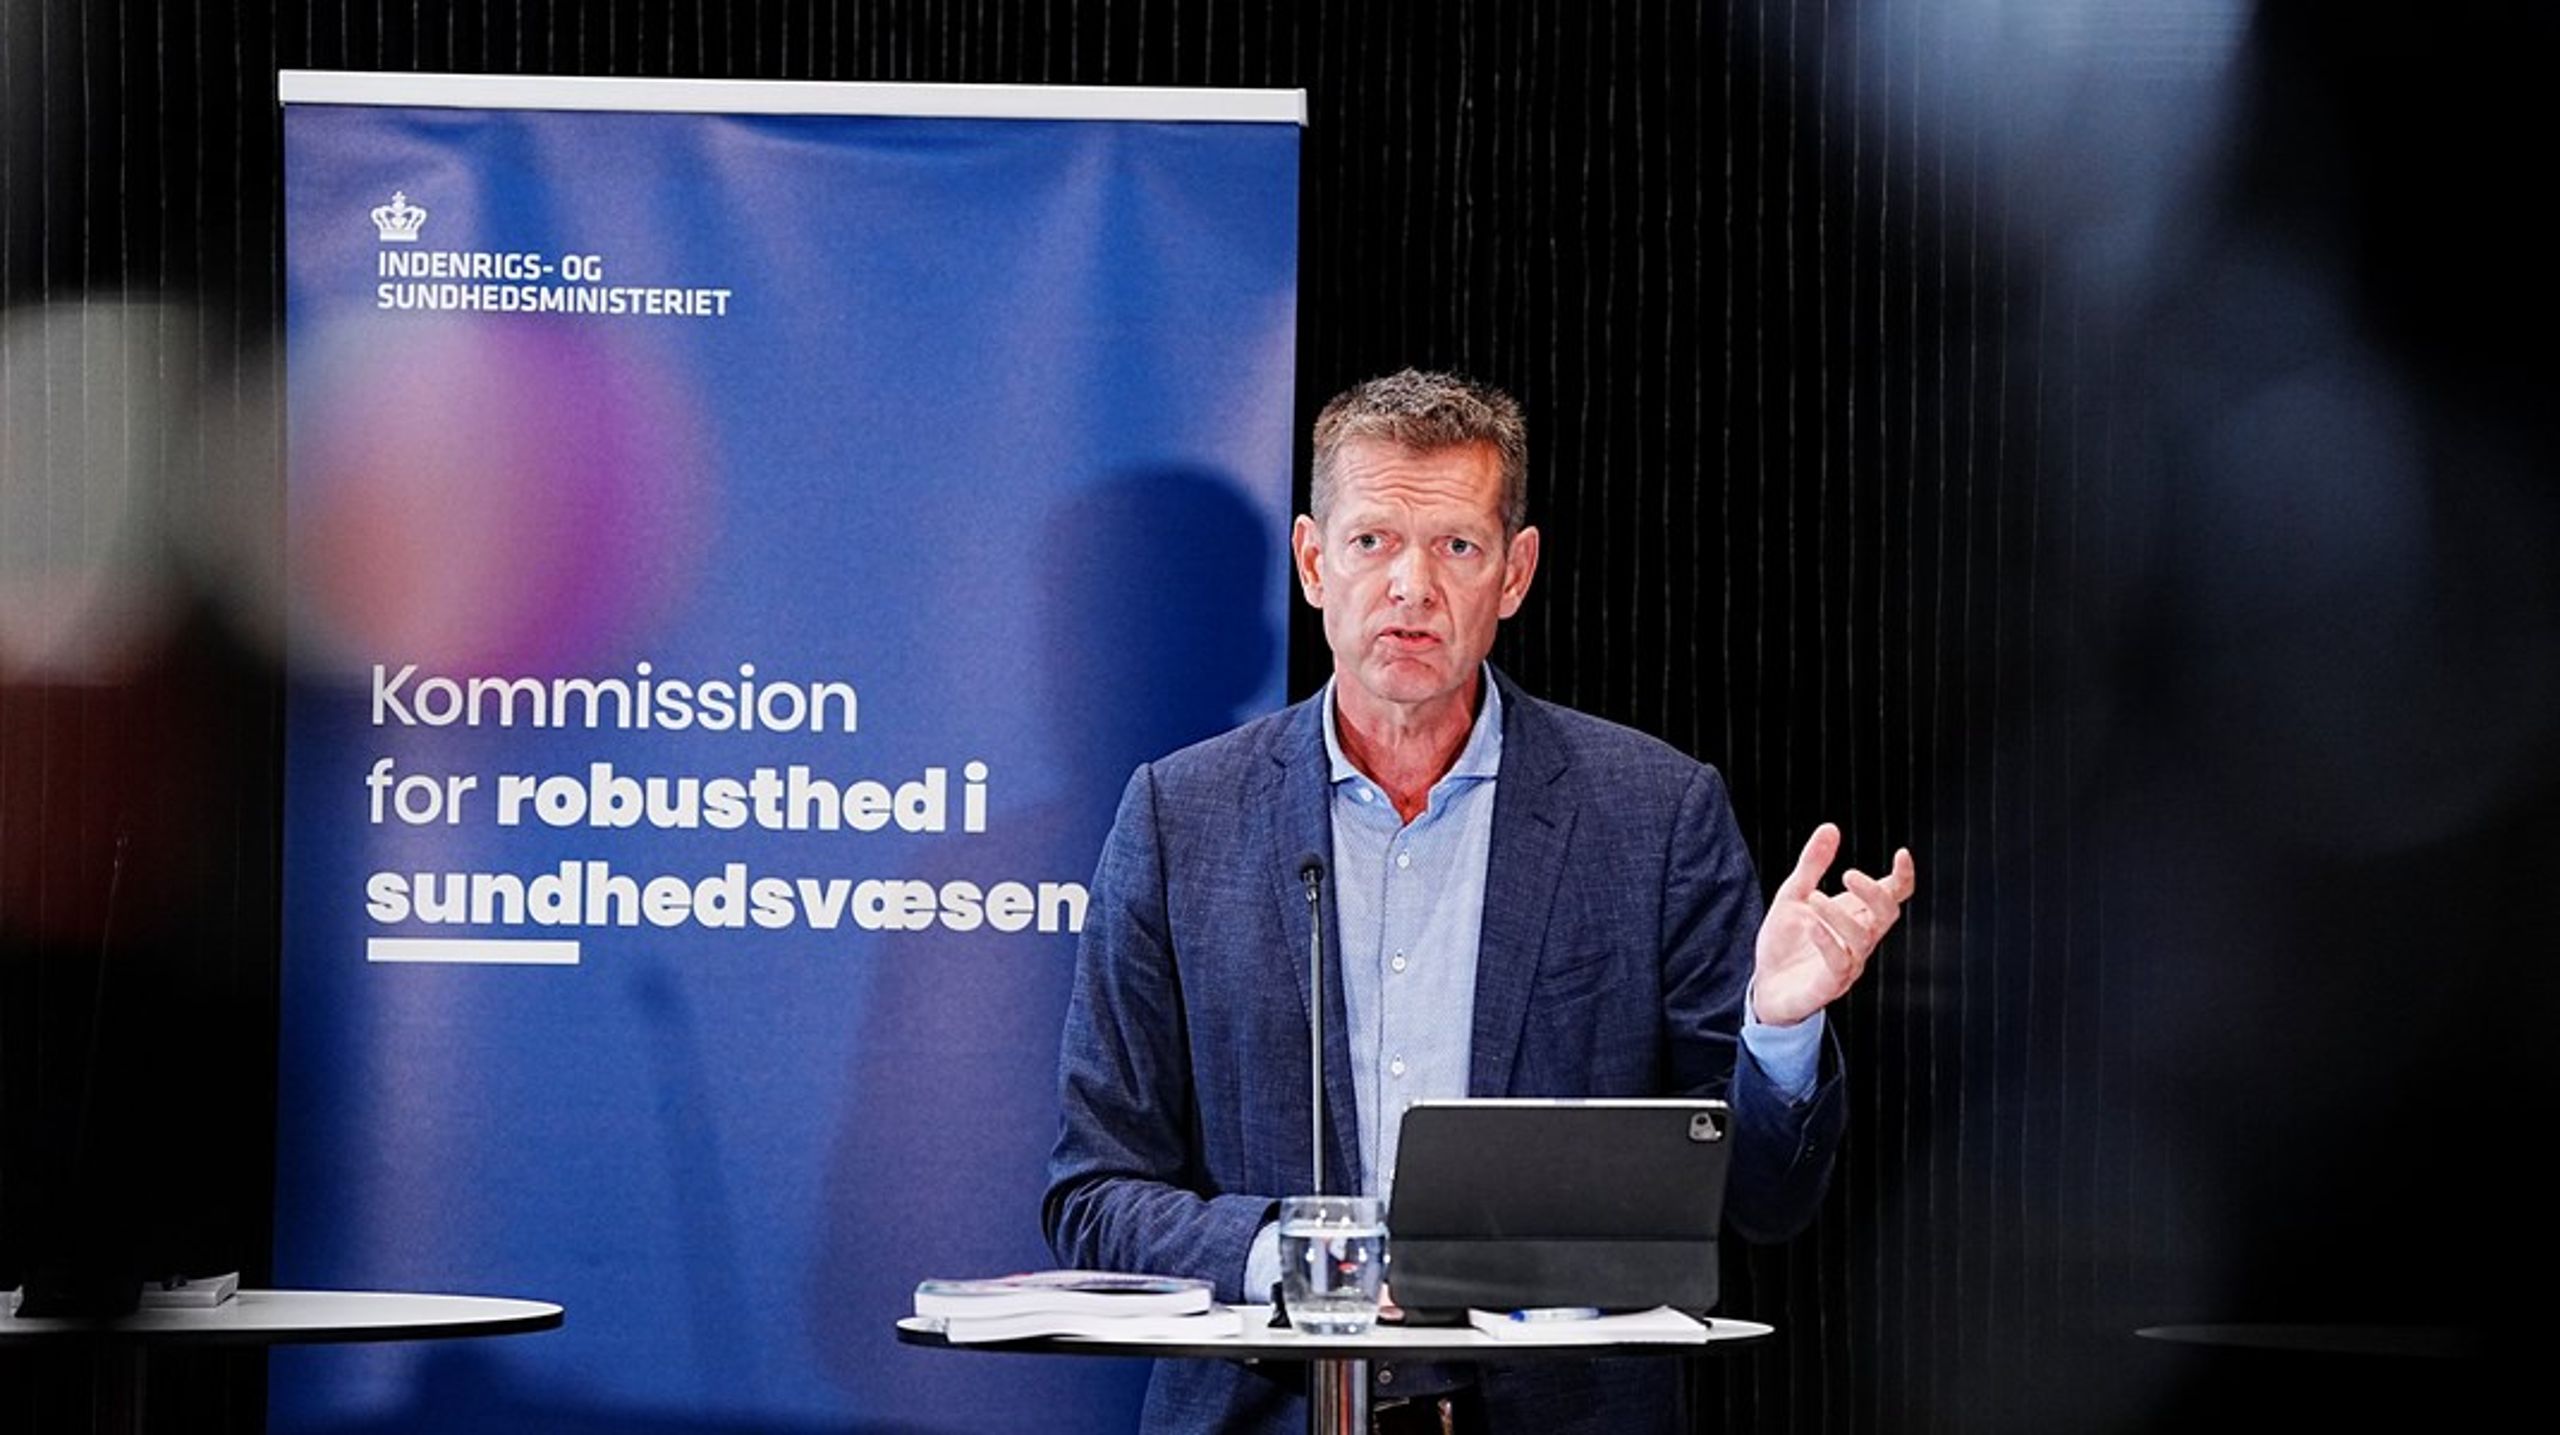 Robusthedskommissionens netop fremlagte anbefalinger demonstrerer tydeligt, at politikerne er nødt til at drøfte politiske prioriteringer i sundhedsvæsenet, skriver Søren Søndergaard.